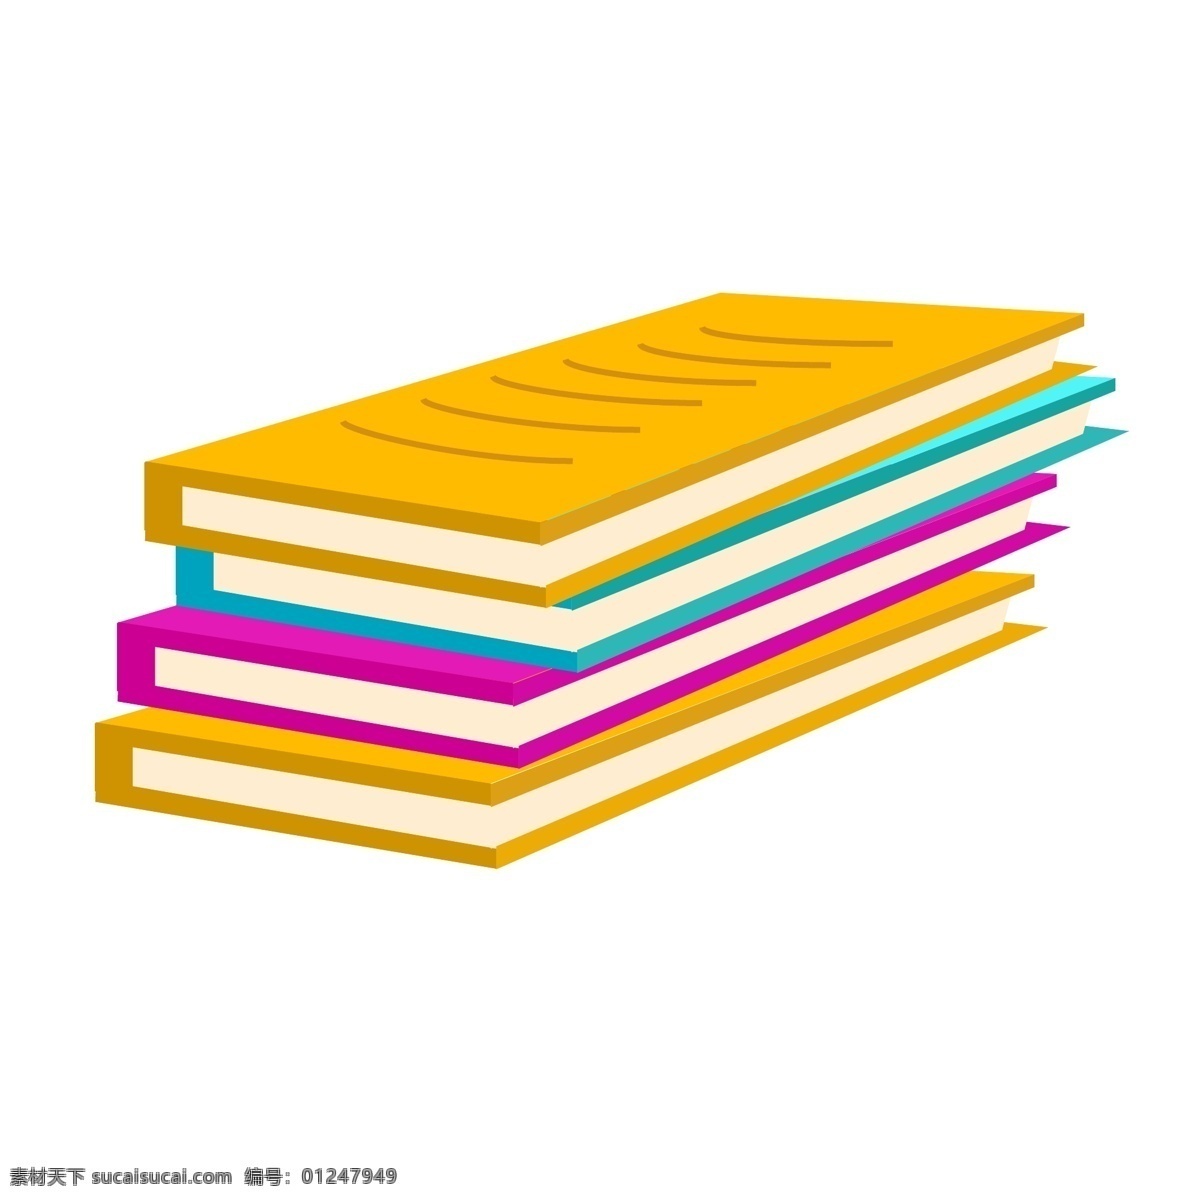 彩色 书籍 装饰 插画 彩色的书籍 学习书籍 漂亮的书籍 创意书籍 立体书籍 卡通书籍 书籍插画